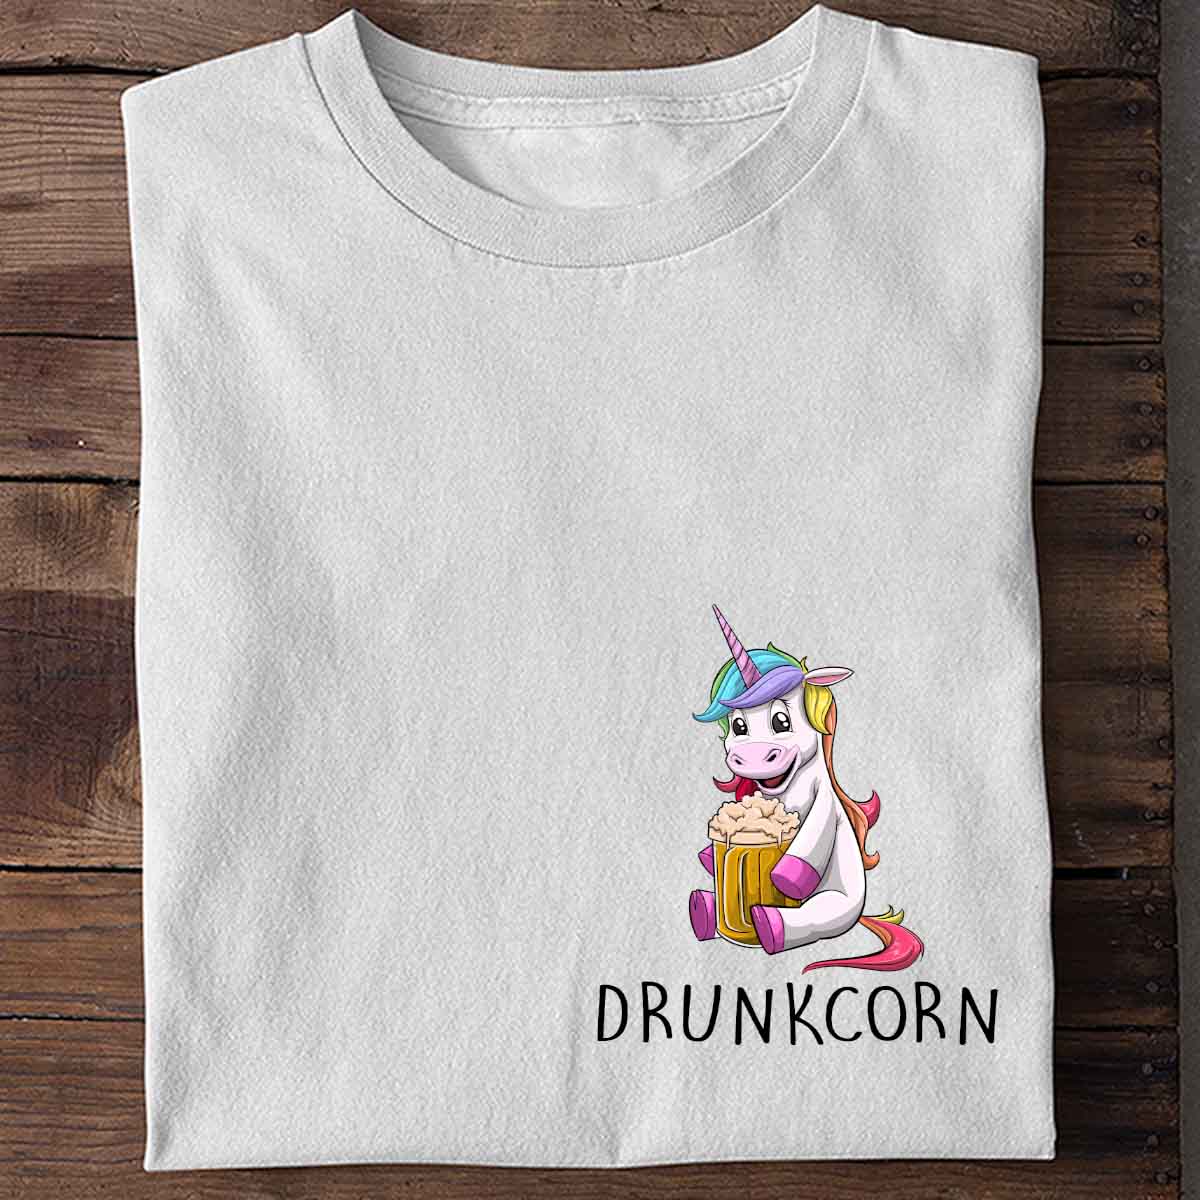 Drunkcorn - Shirt Unisex Chest